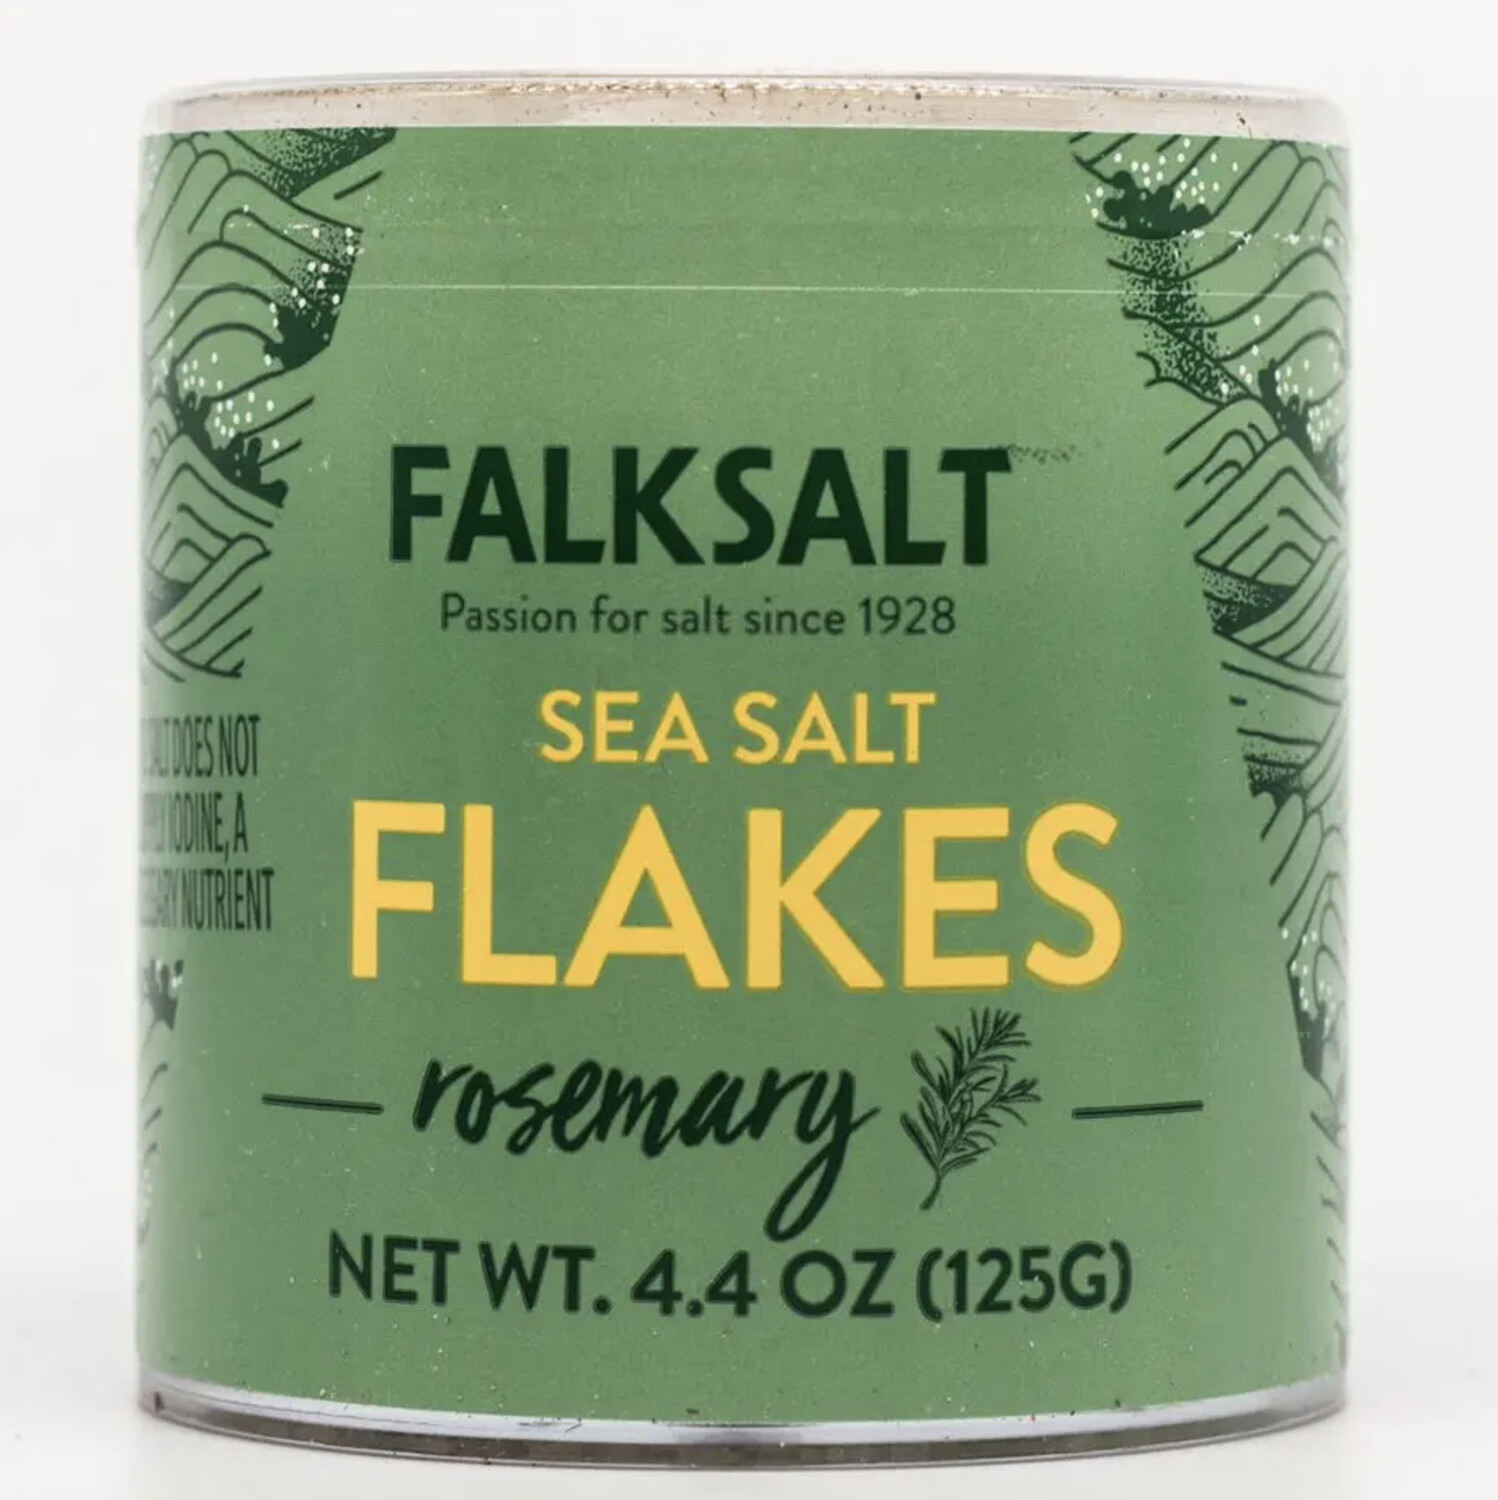 Sea Salt Flakes - Falksalt - 4.4 oz, Flavor: Rosemary